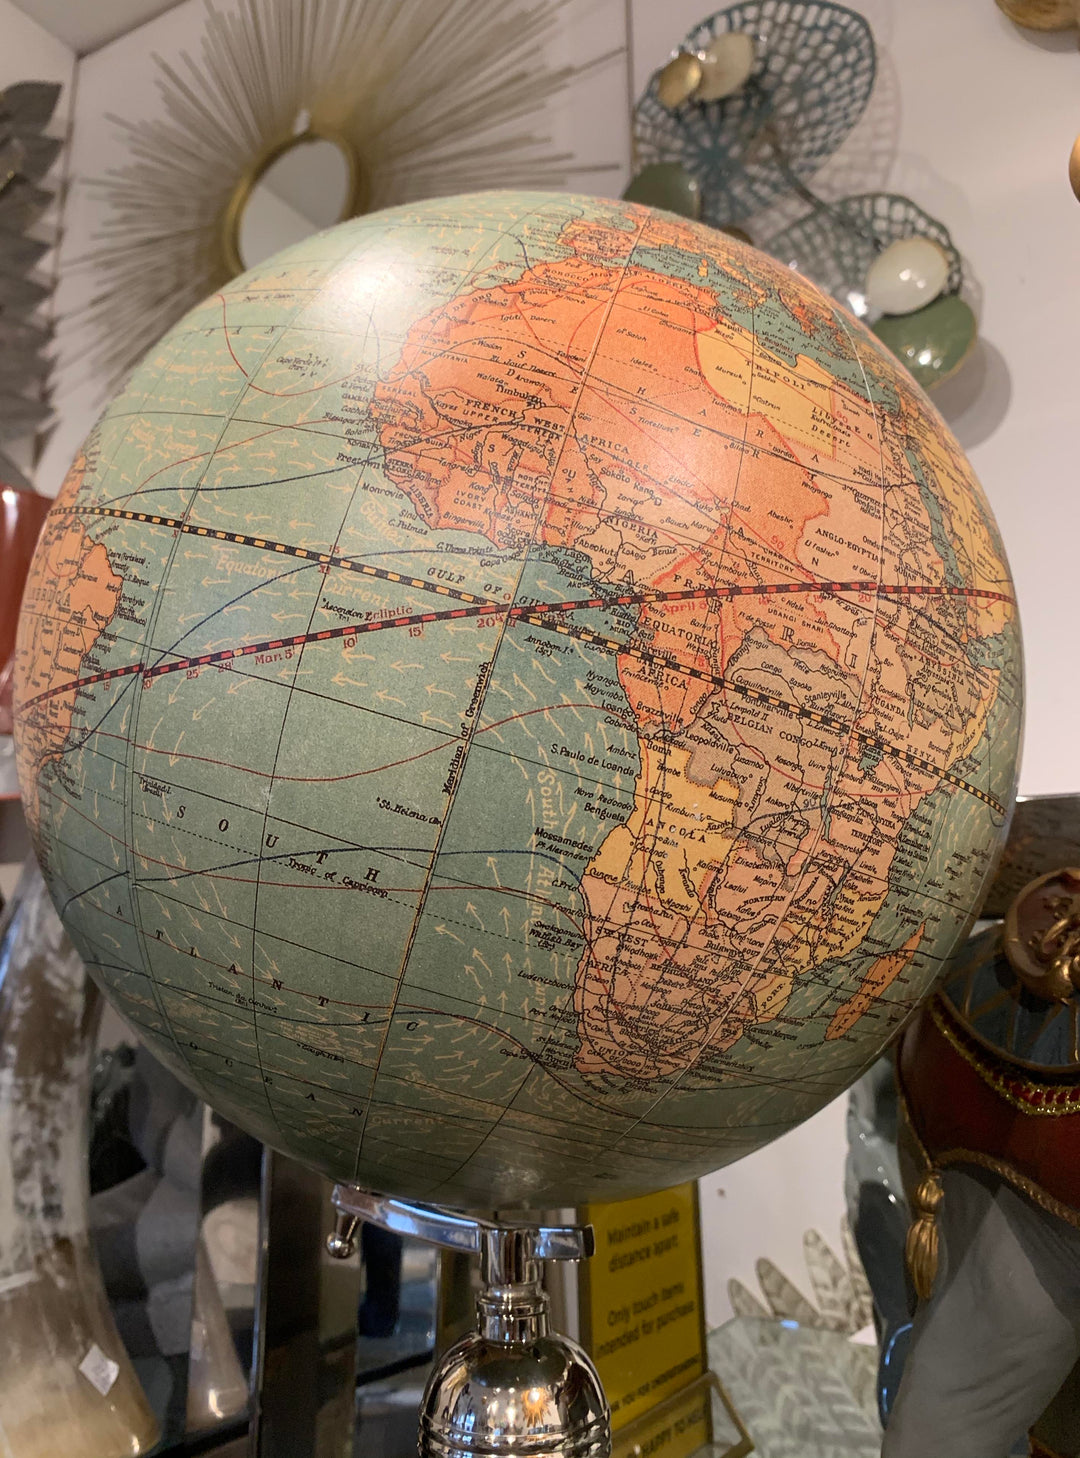 Antique World Globe – Classic Vintage Globe Replica  Weber Costello